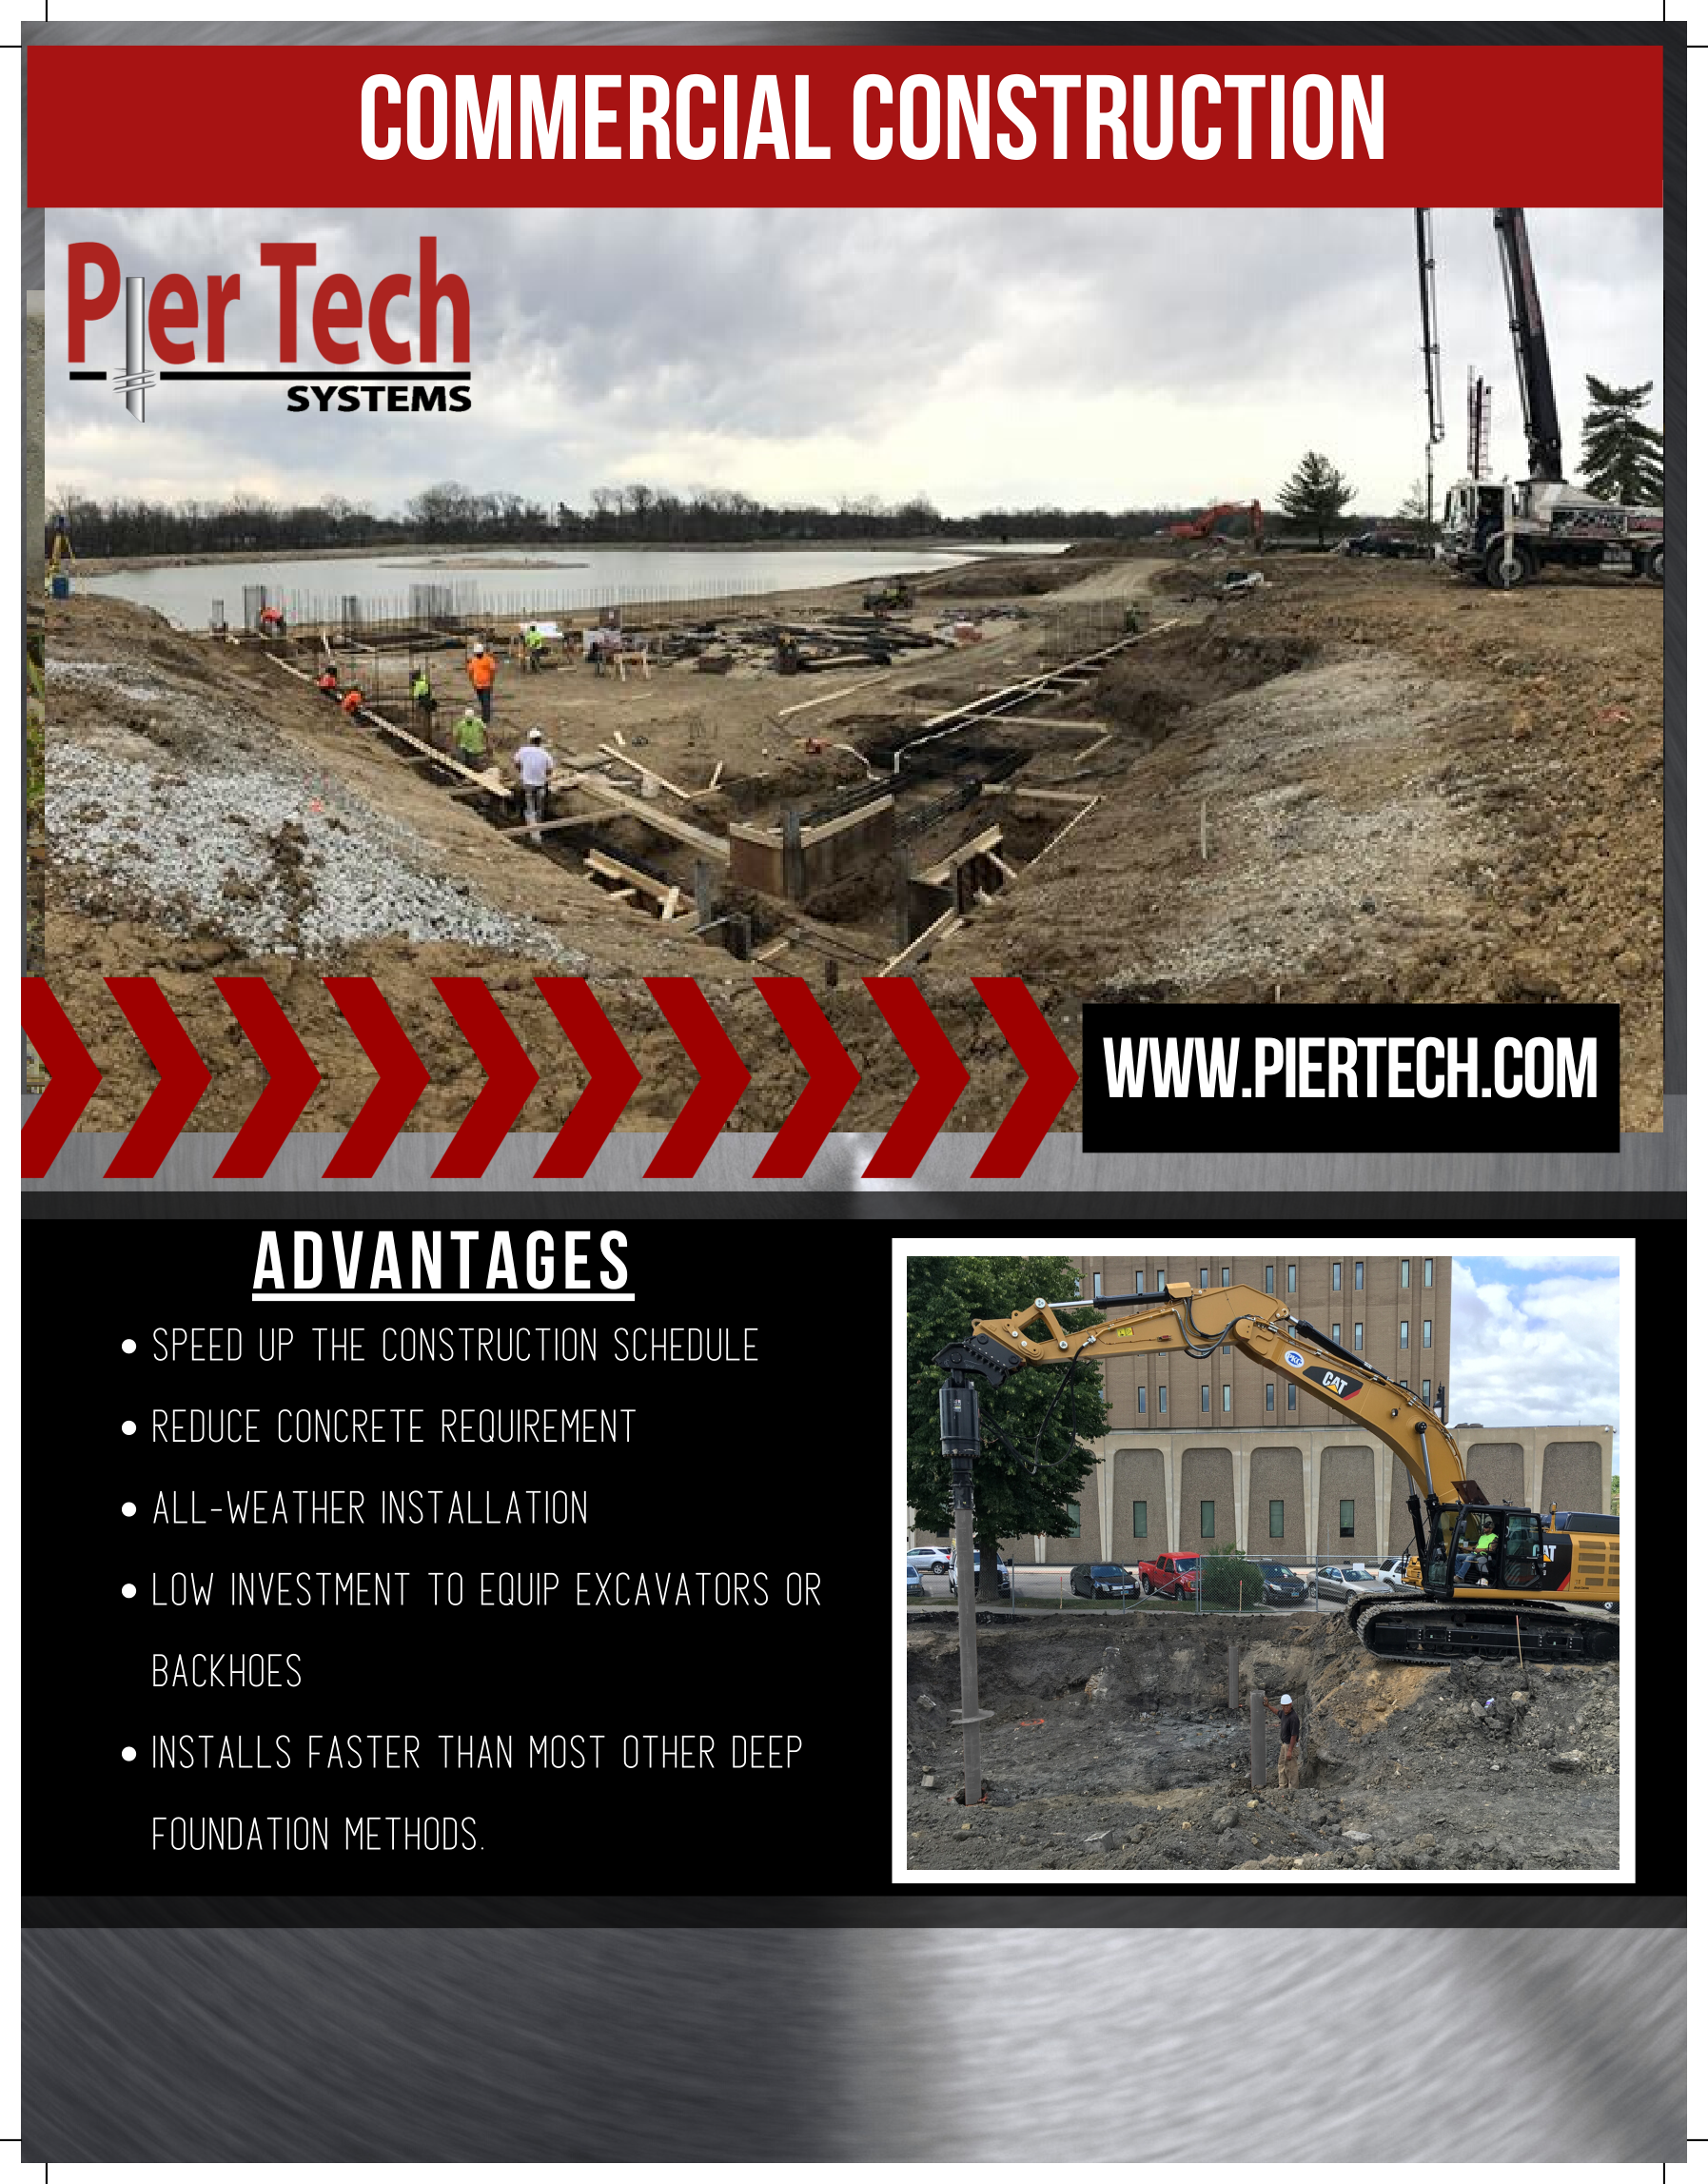 Pier tech Commercial Construction-1